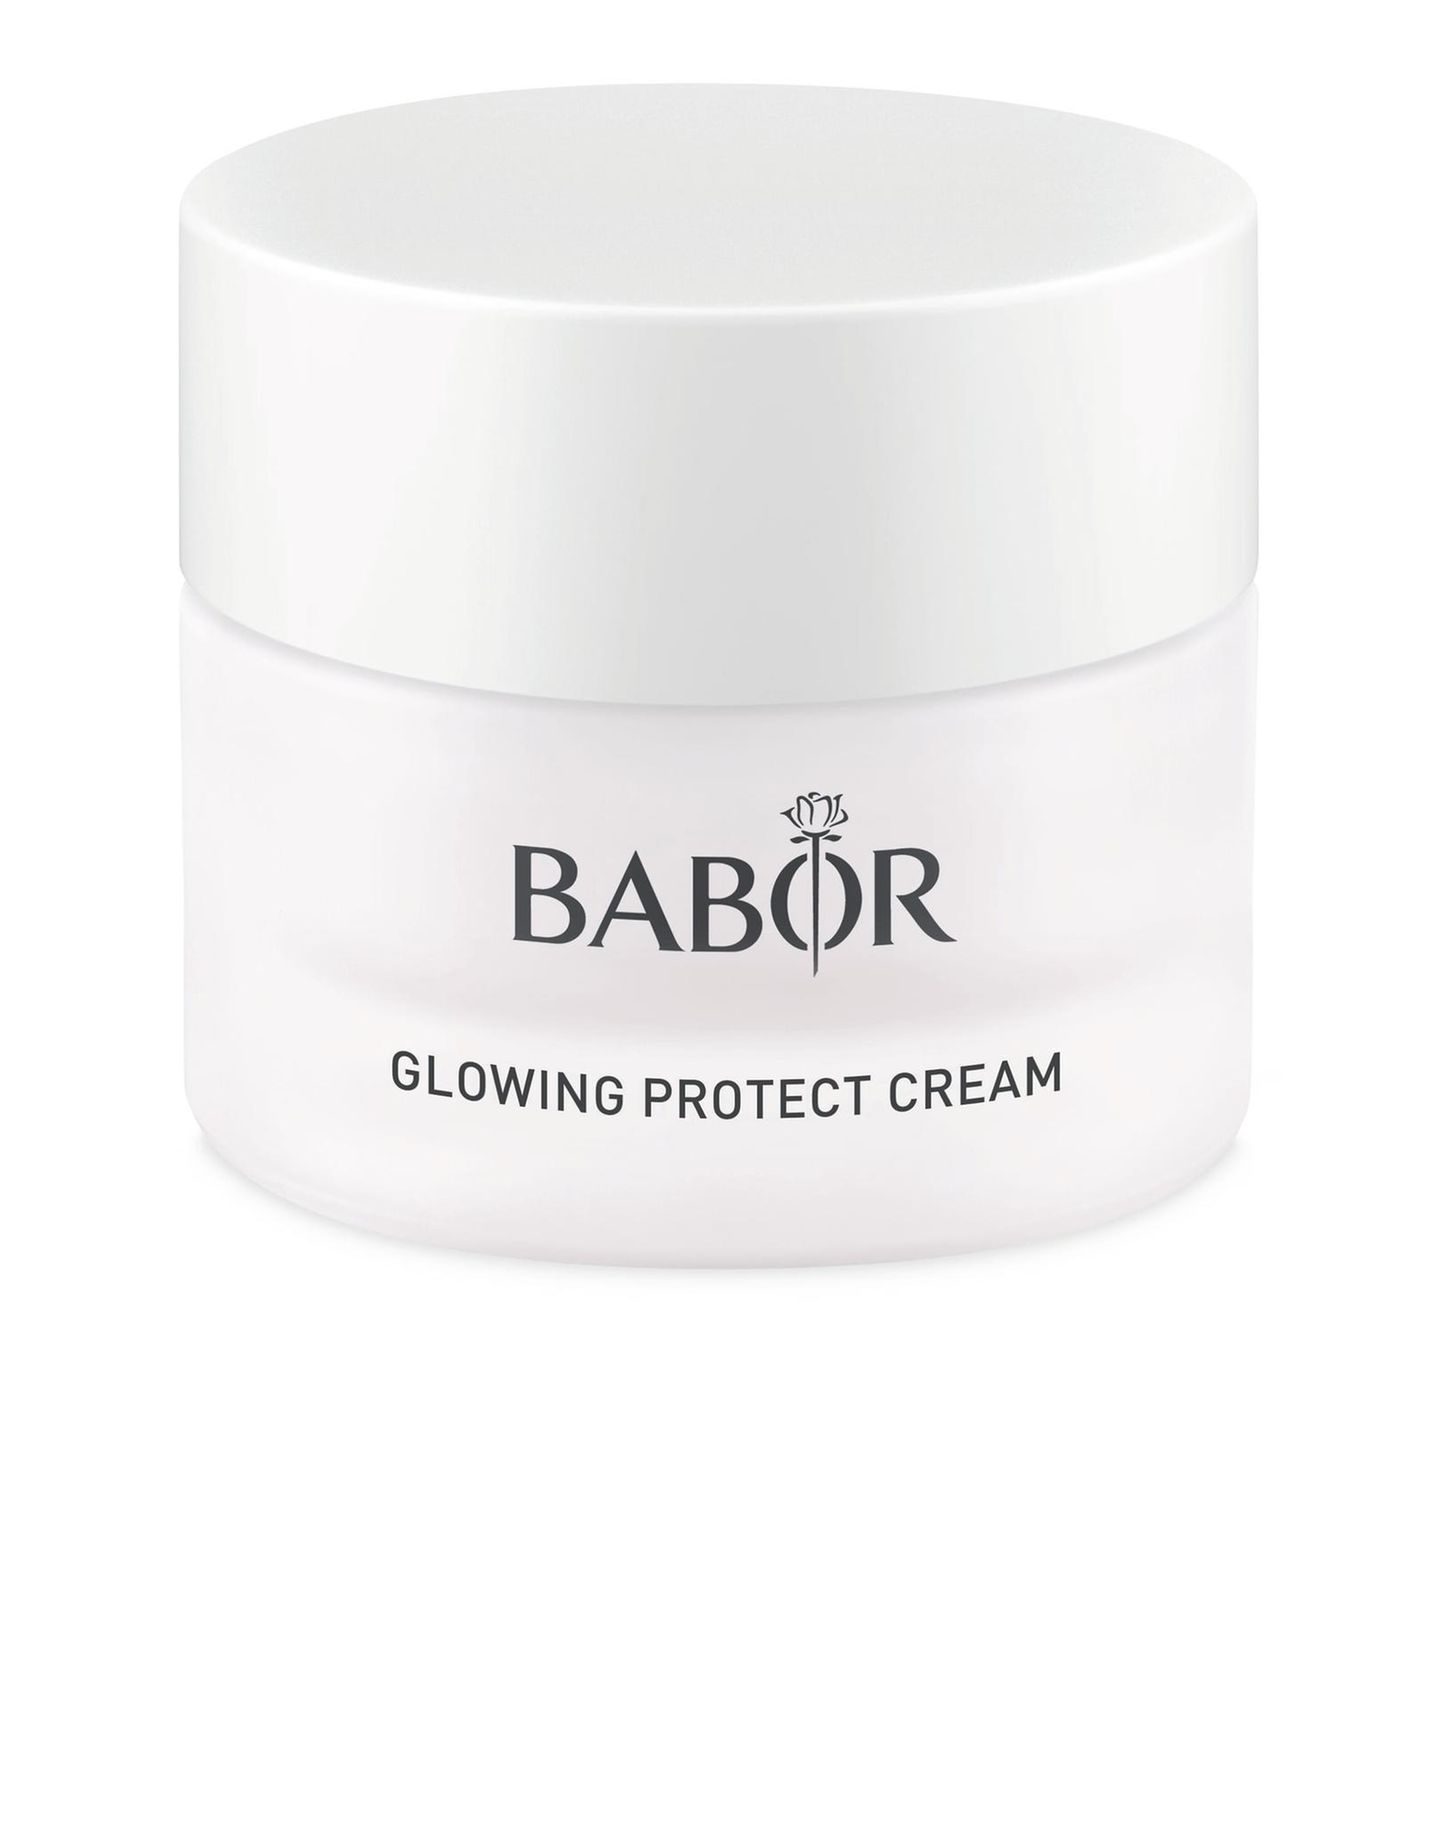 Auch im Winter möchten wir nicht auf einen gesunden Glow verzichten. Die Glowing Protect Cream aus der BABOR Winter Edition pflegt die Haut und stärkt ihre Barriere. Extra Glow-Pigmente sorgen zudem für einen strahlenden Teint – we love! Um 50 Euro.